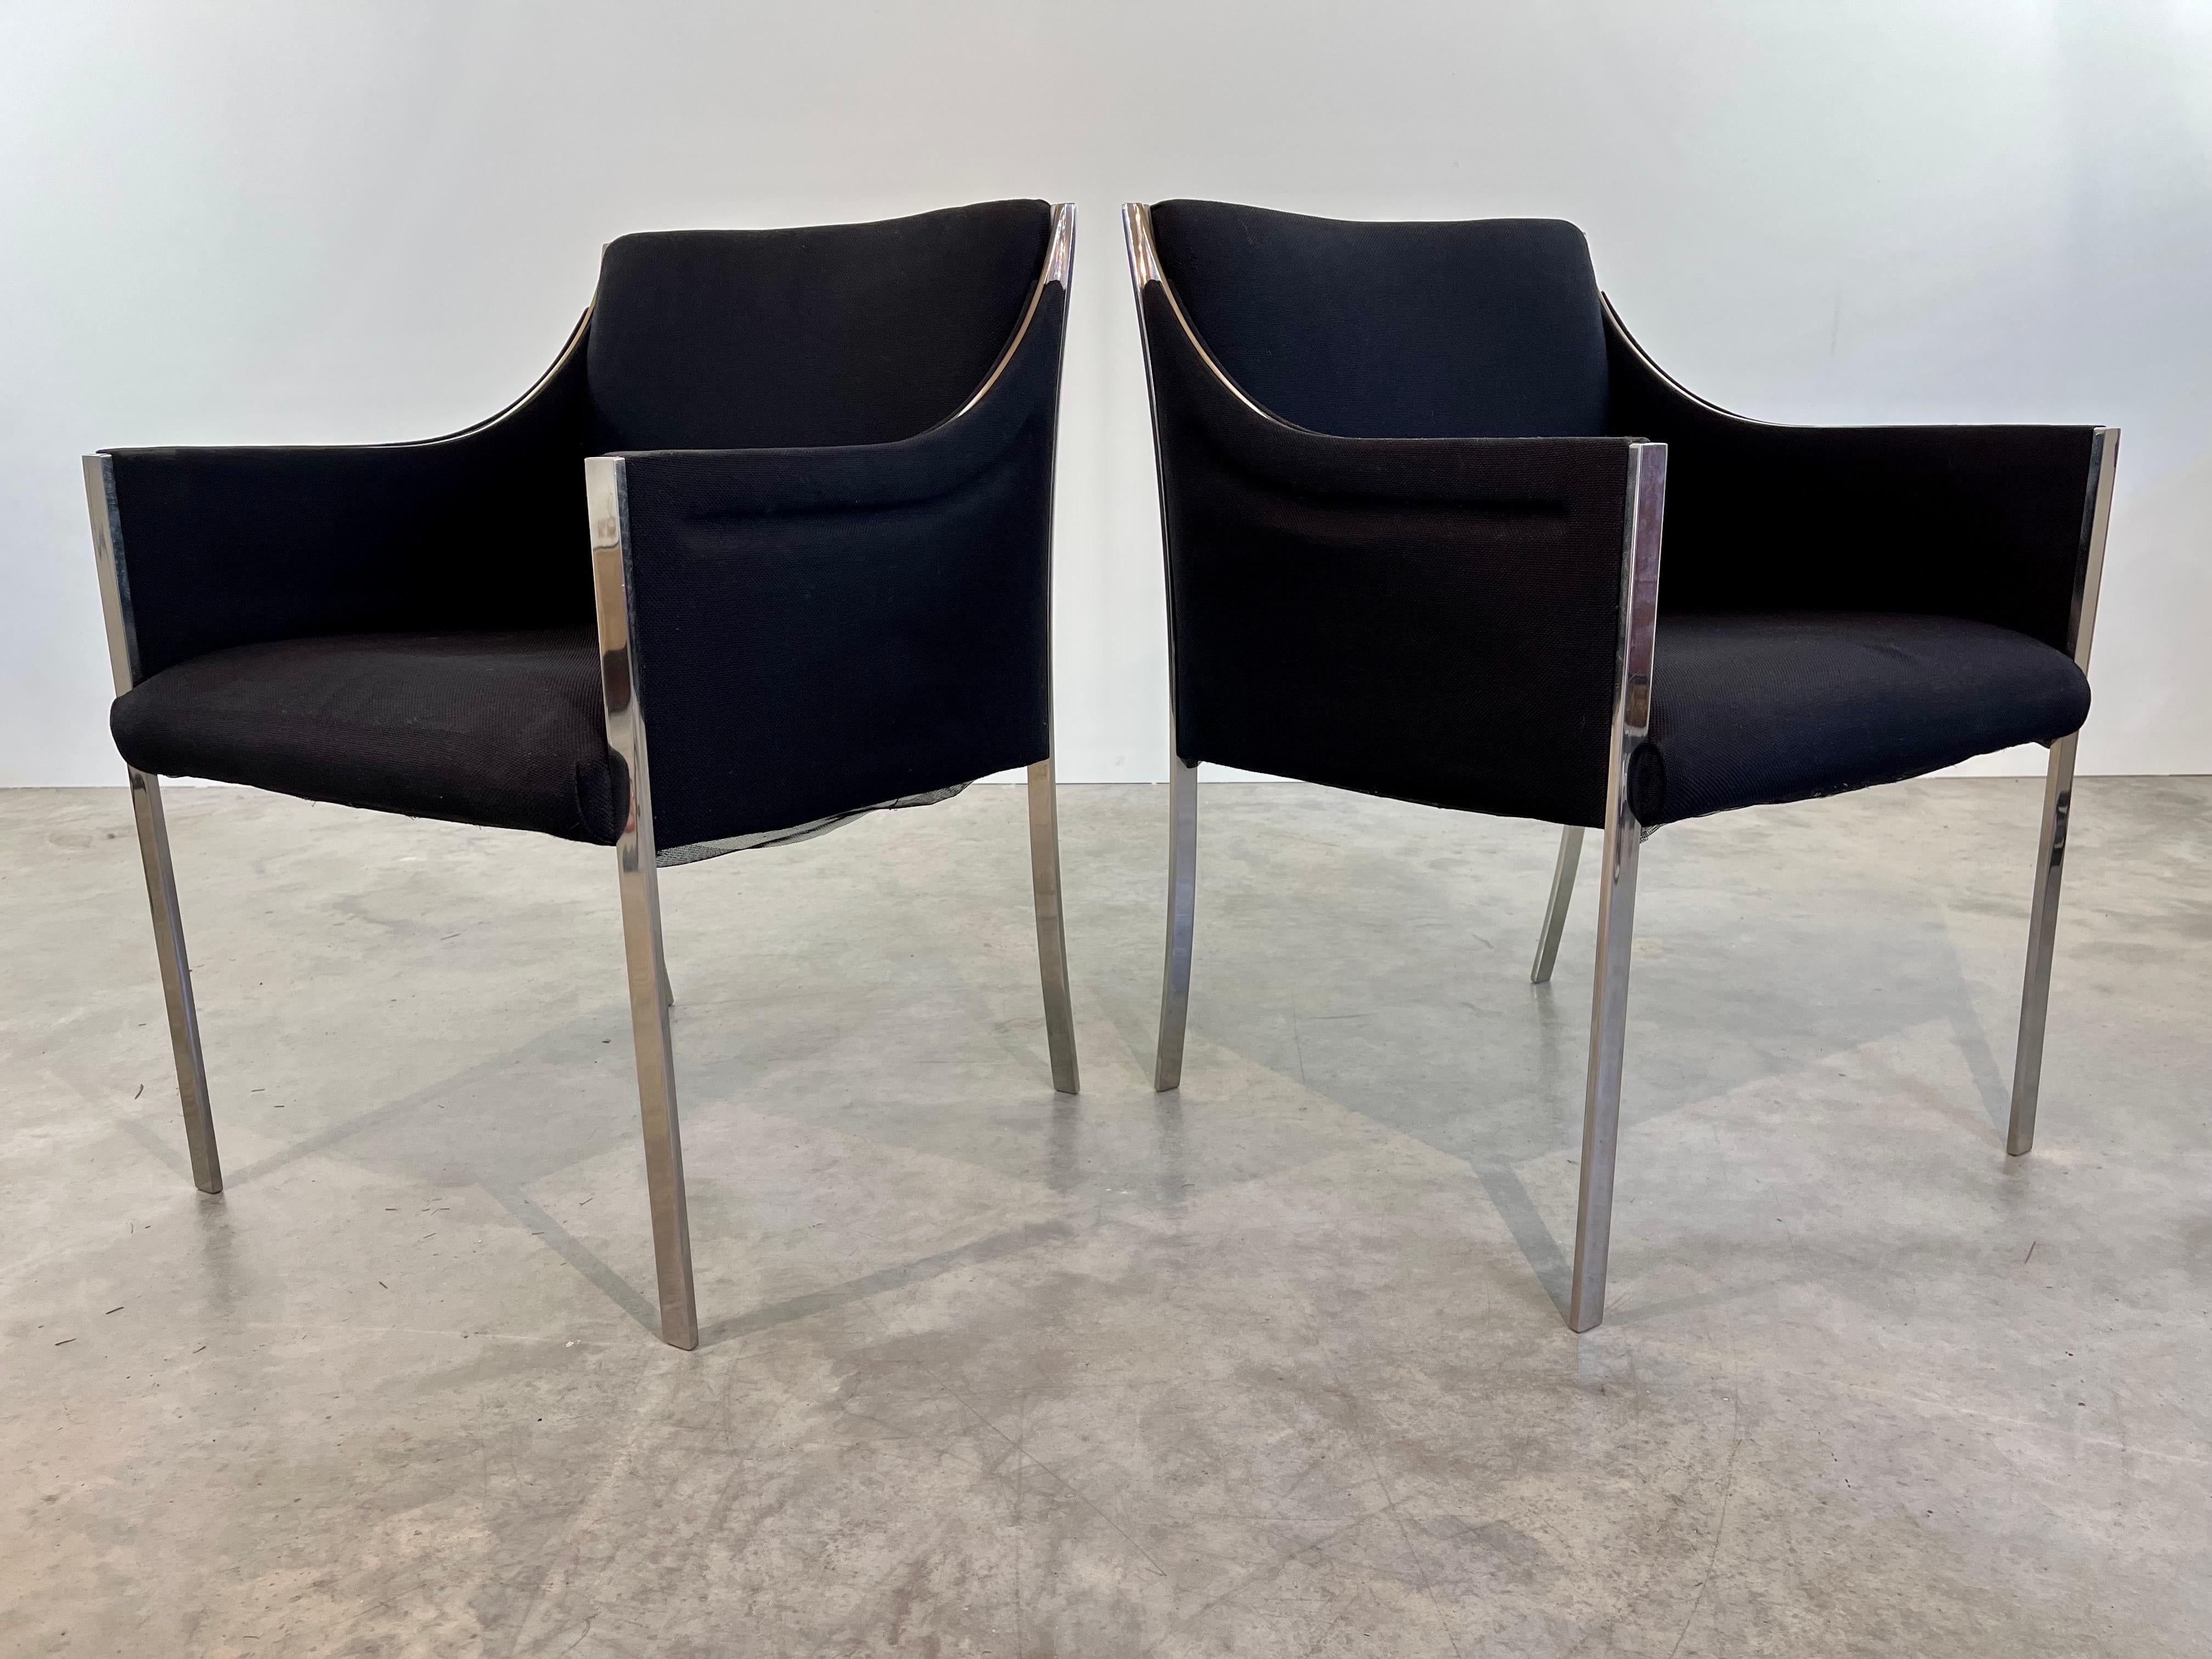 Zwei seltene, frühe Sessel von Jens Risom mit Gestellen aus massivem Chromstahl und schwarzem Wollstoff von Knoll. Elegante Linien und ein Design, das sich abhebt. 
Schöne solide Zustand mit Tag vorhanden unter einem Stuhl. 
Maße: 31.5x22.5x25